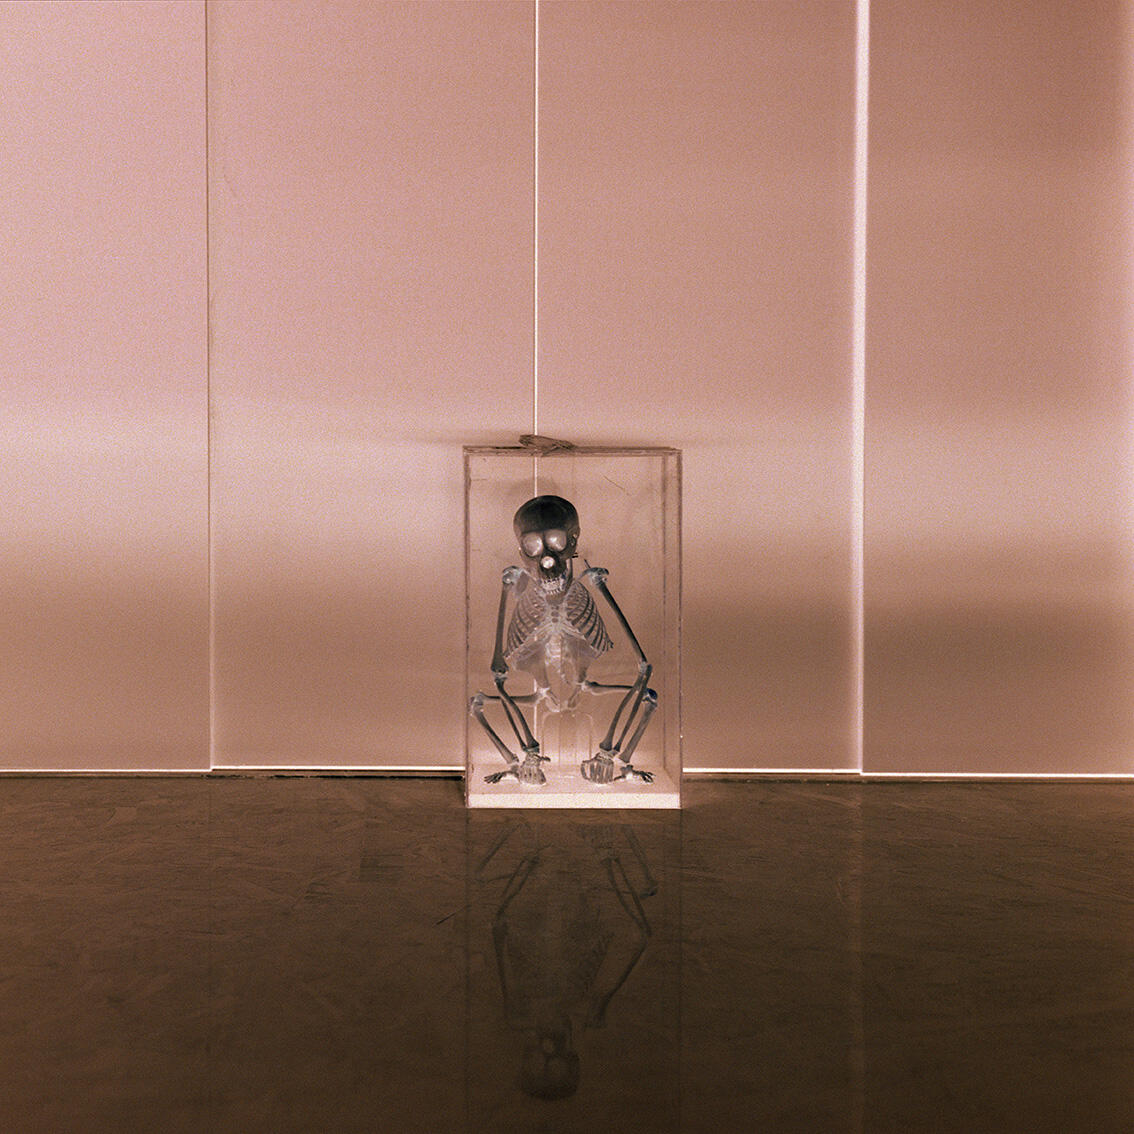 Bilde av en glassmonter med skjelettet av en liten ape. Bildet er negativt, med et rosaskjær. Fotografi.